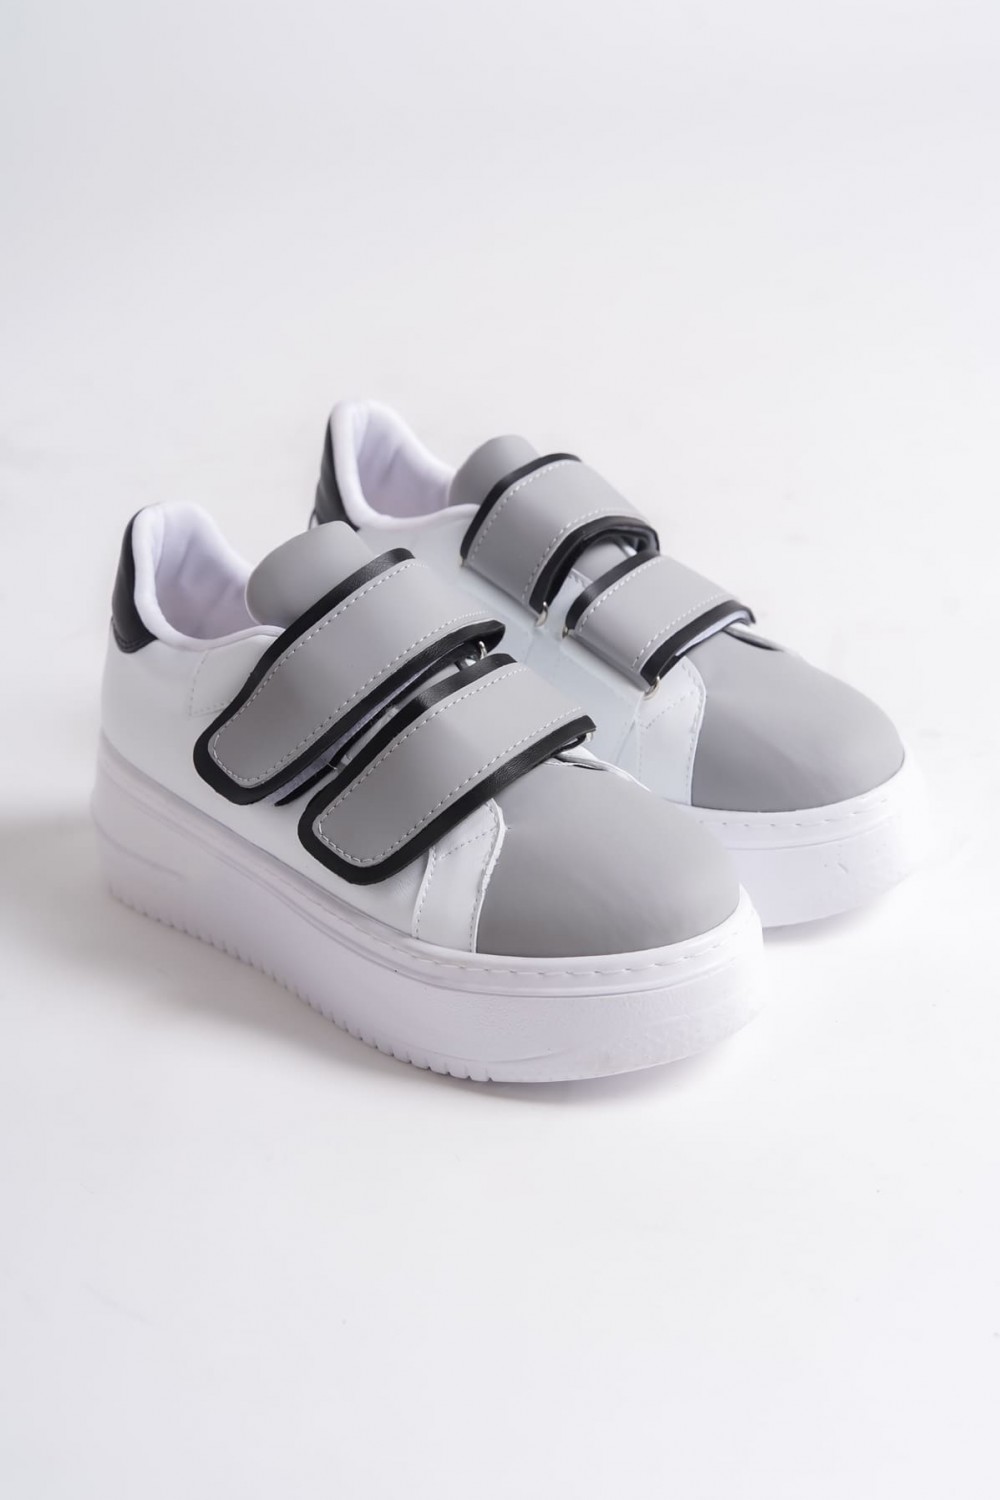 VALENCIA Bağcıksız Cırt Cırtlı Ortopedik Taban Kadın Sneaker Ayakkabı BT Beyaz/Gri